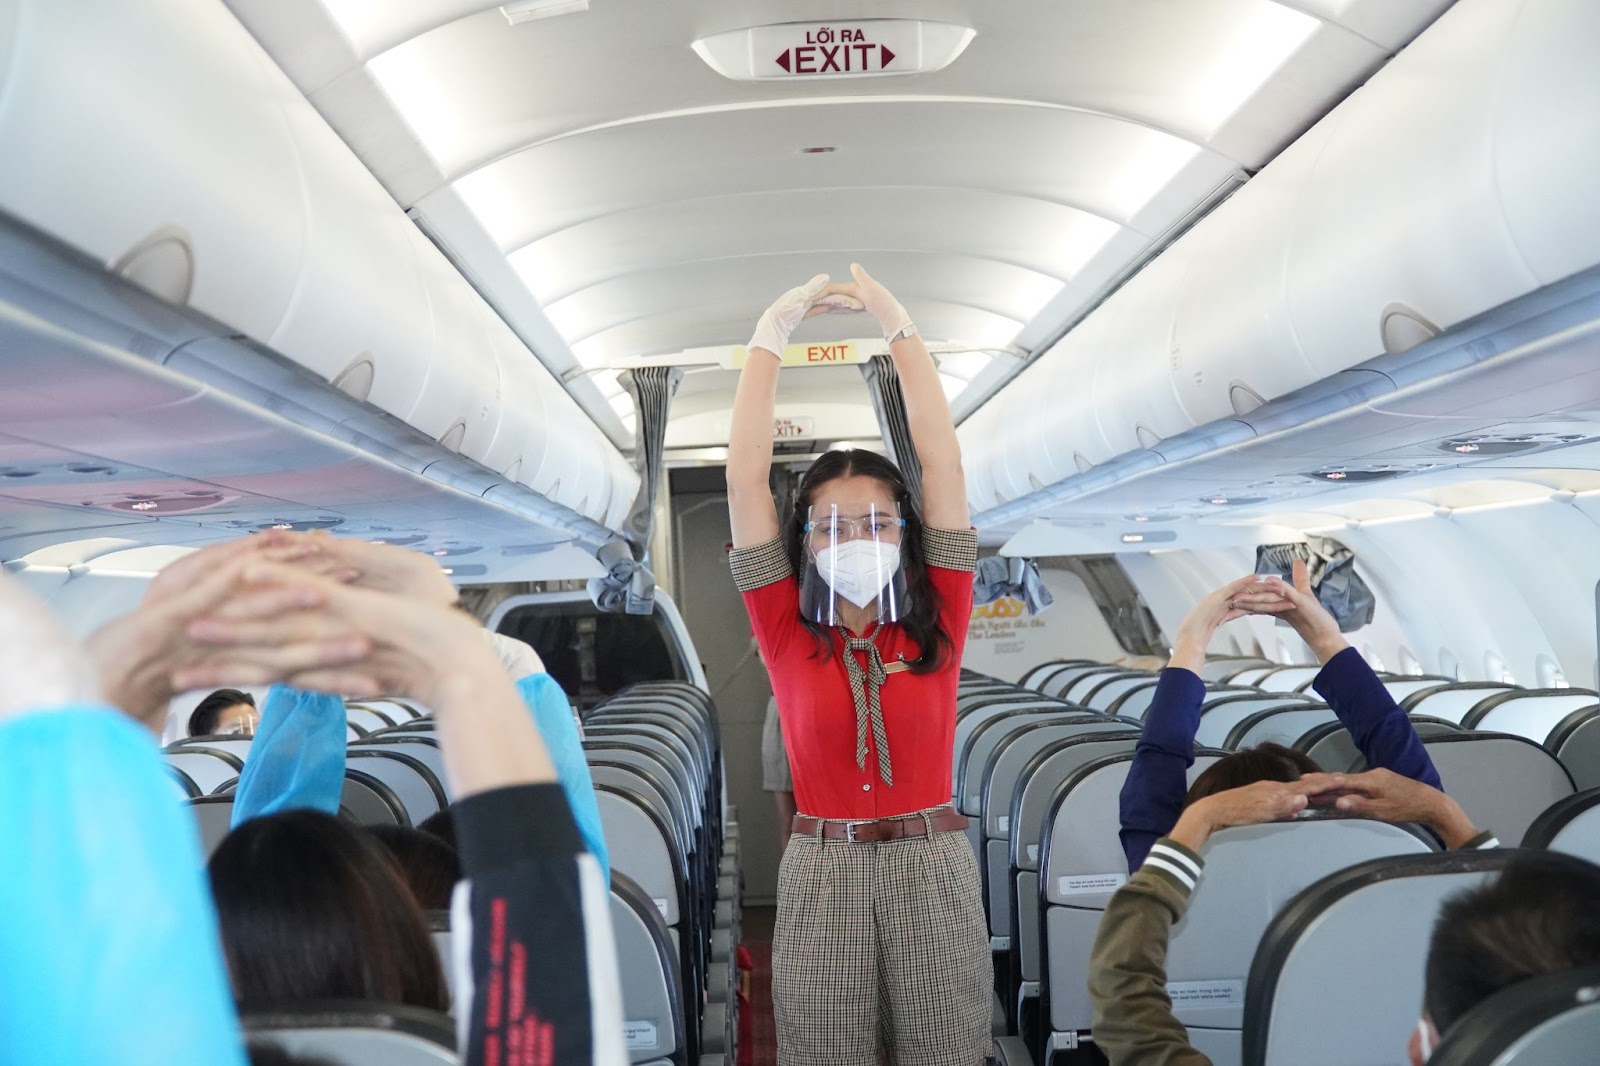 Chuyến bay 0 đồng của Vietjet Air và hành trình trở về quê hương của người lao động xa xứ - ảnh 15